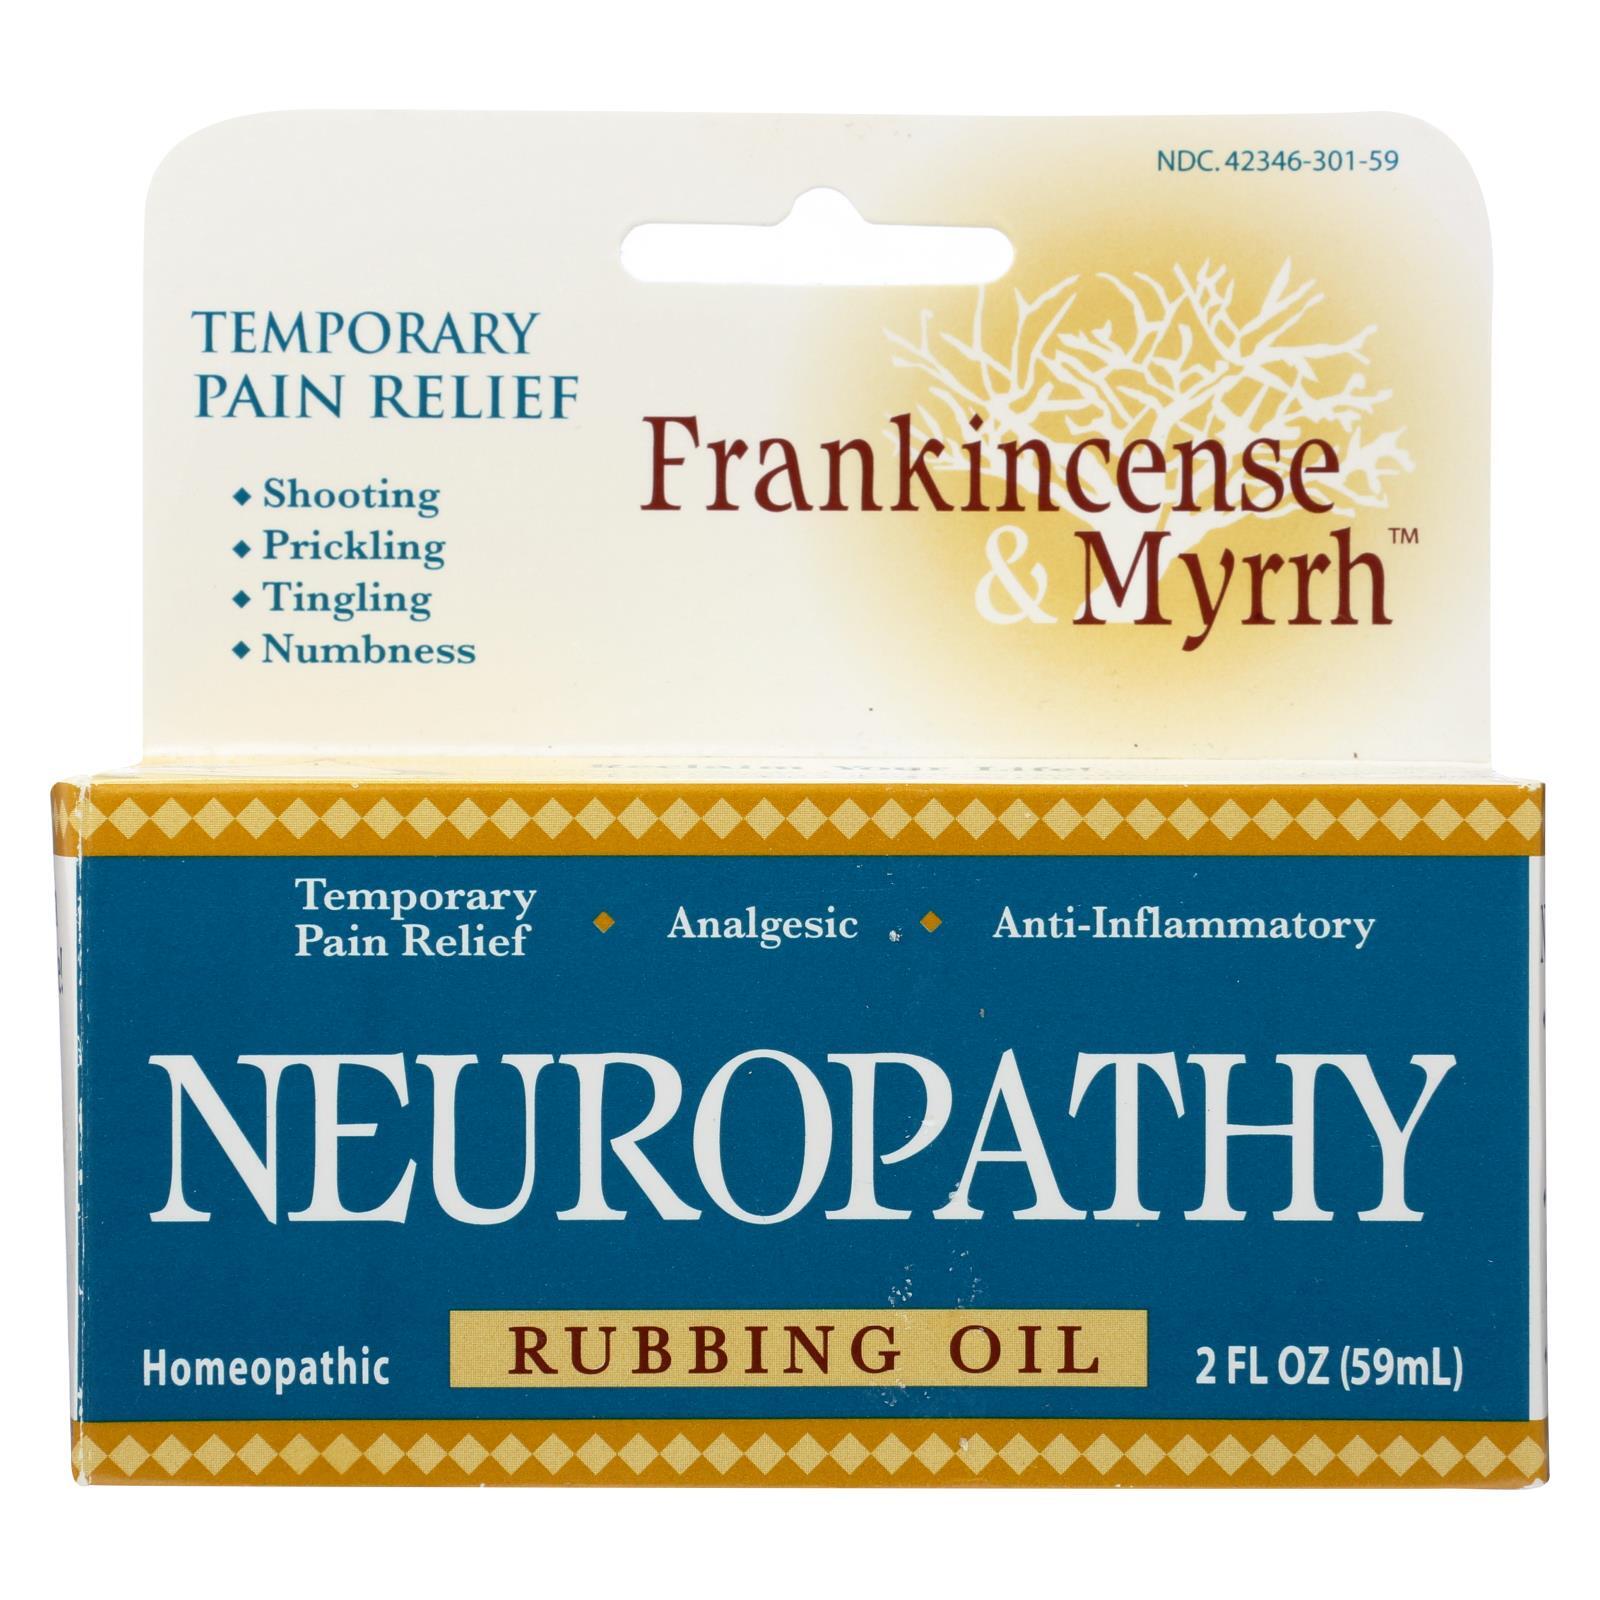 $44.24. Frankincense and Myrrh Neuropathy Rubbing Oil - 2 fl oz. 